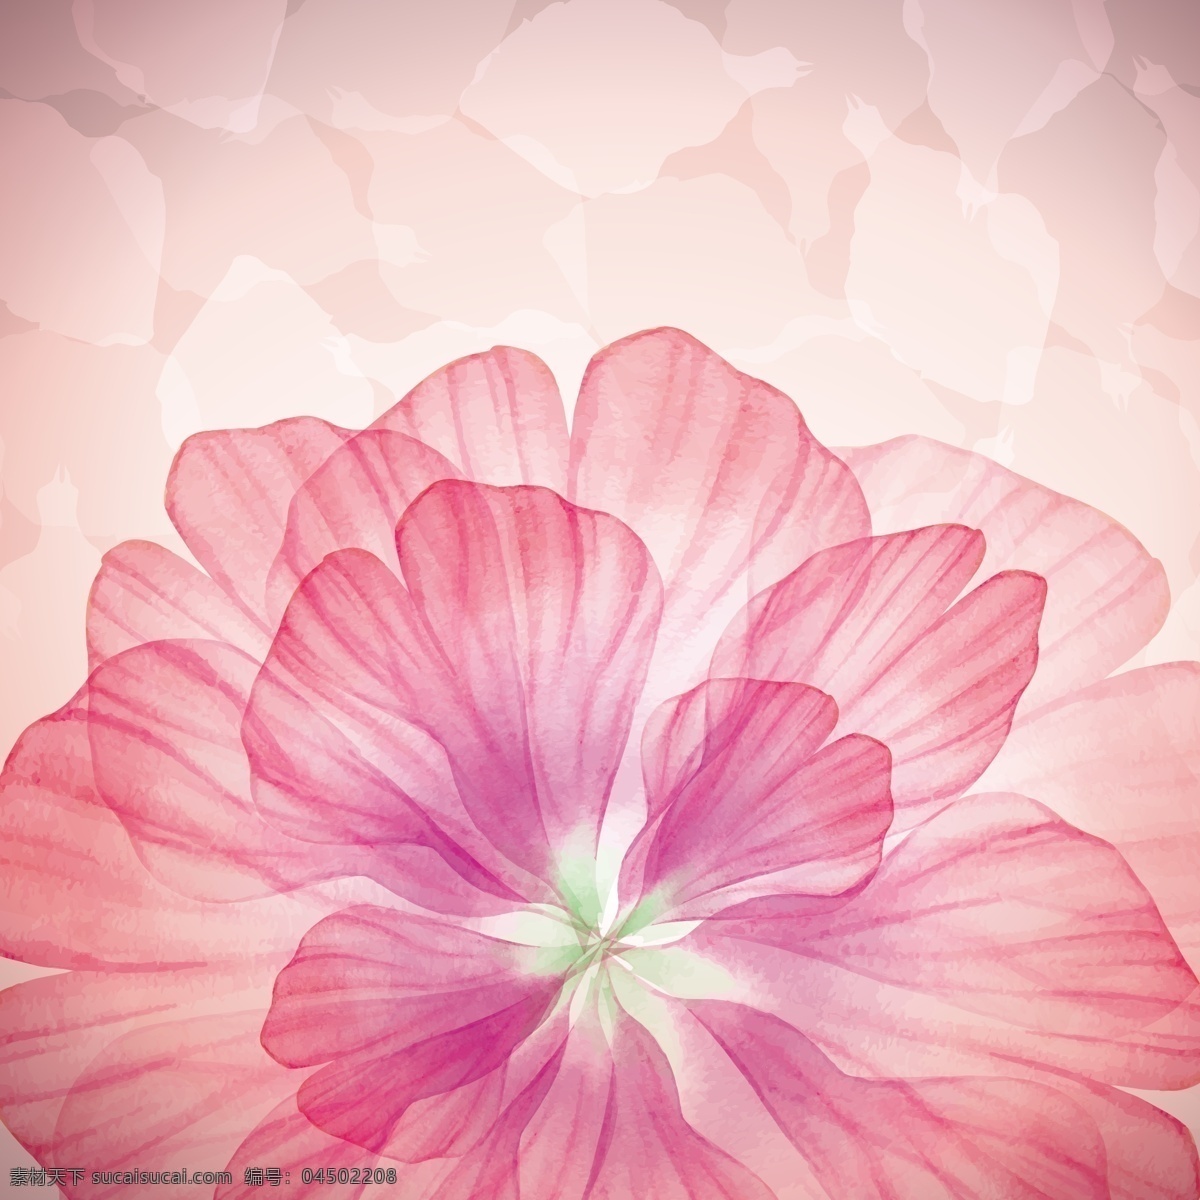 粉色 花瓣 背景图片 红色花瓣 红色花朵 花朵 矢量背景 矢量 高清图片